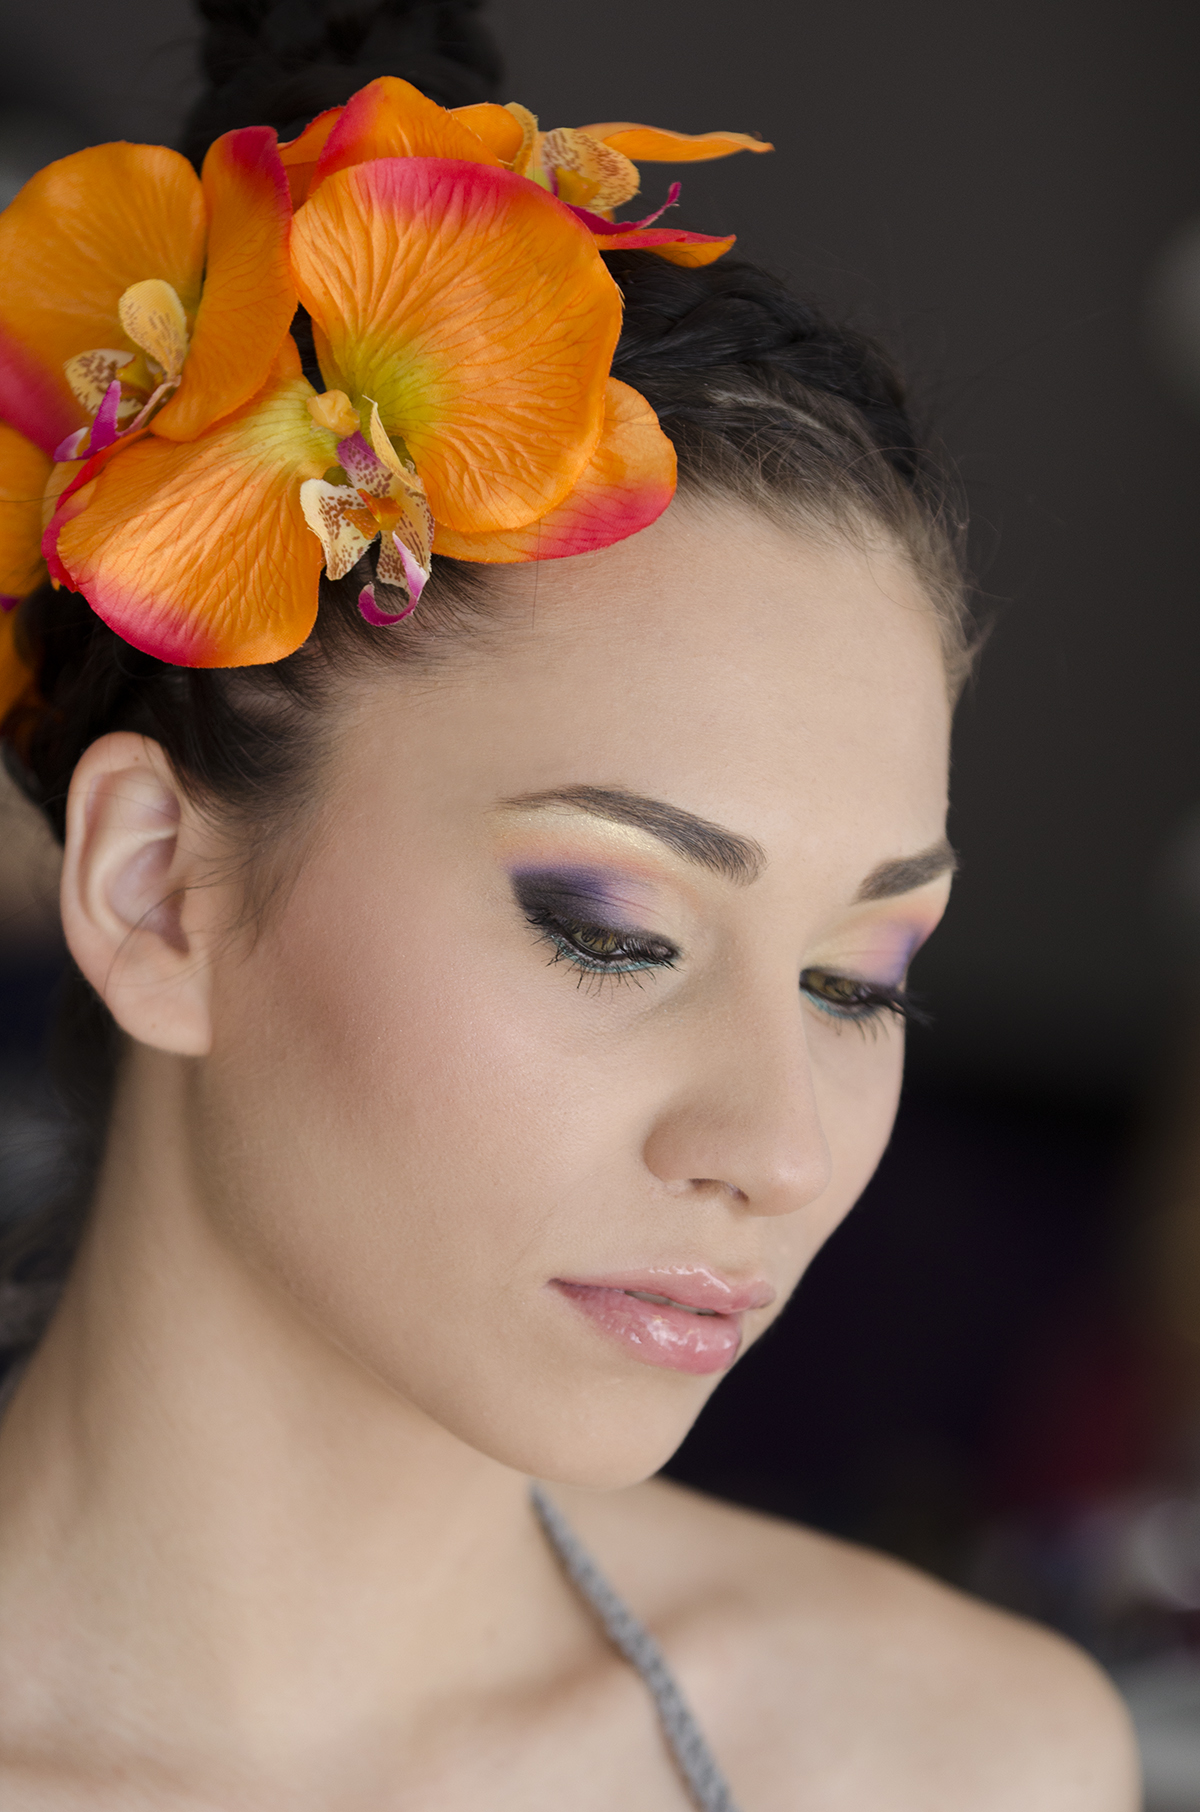 Паола Кръстева с орхидеи в косата и цветен грим